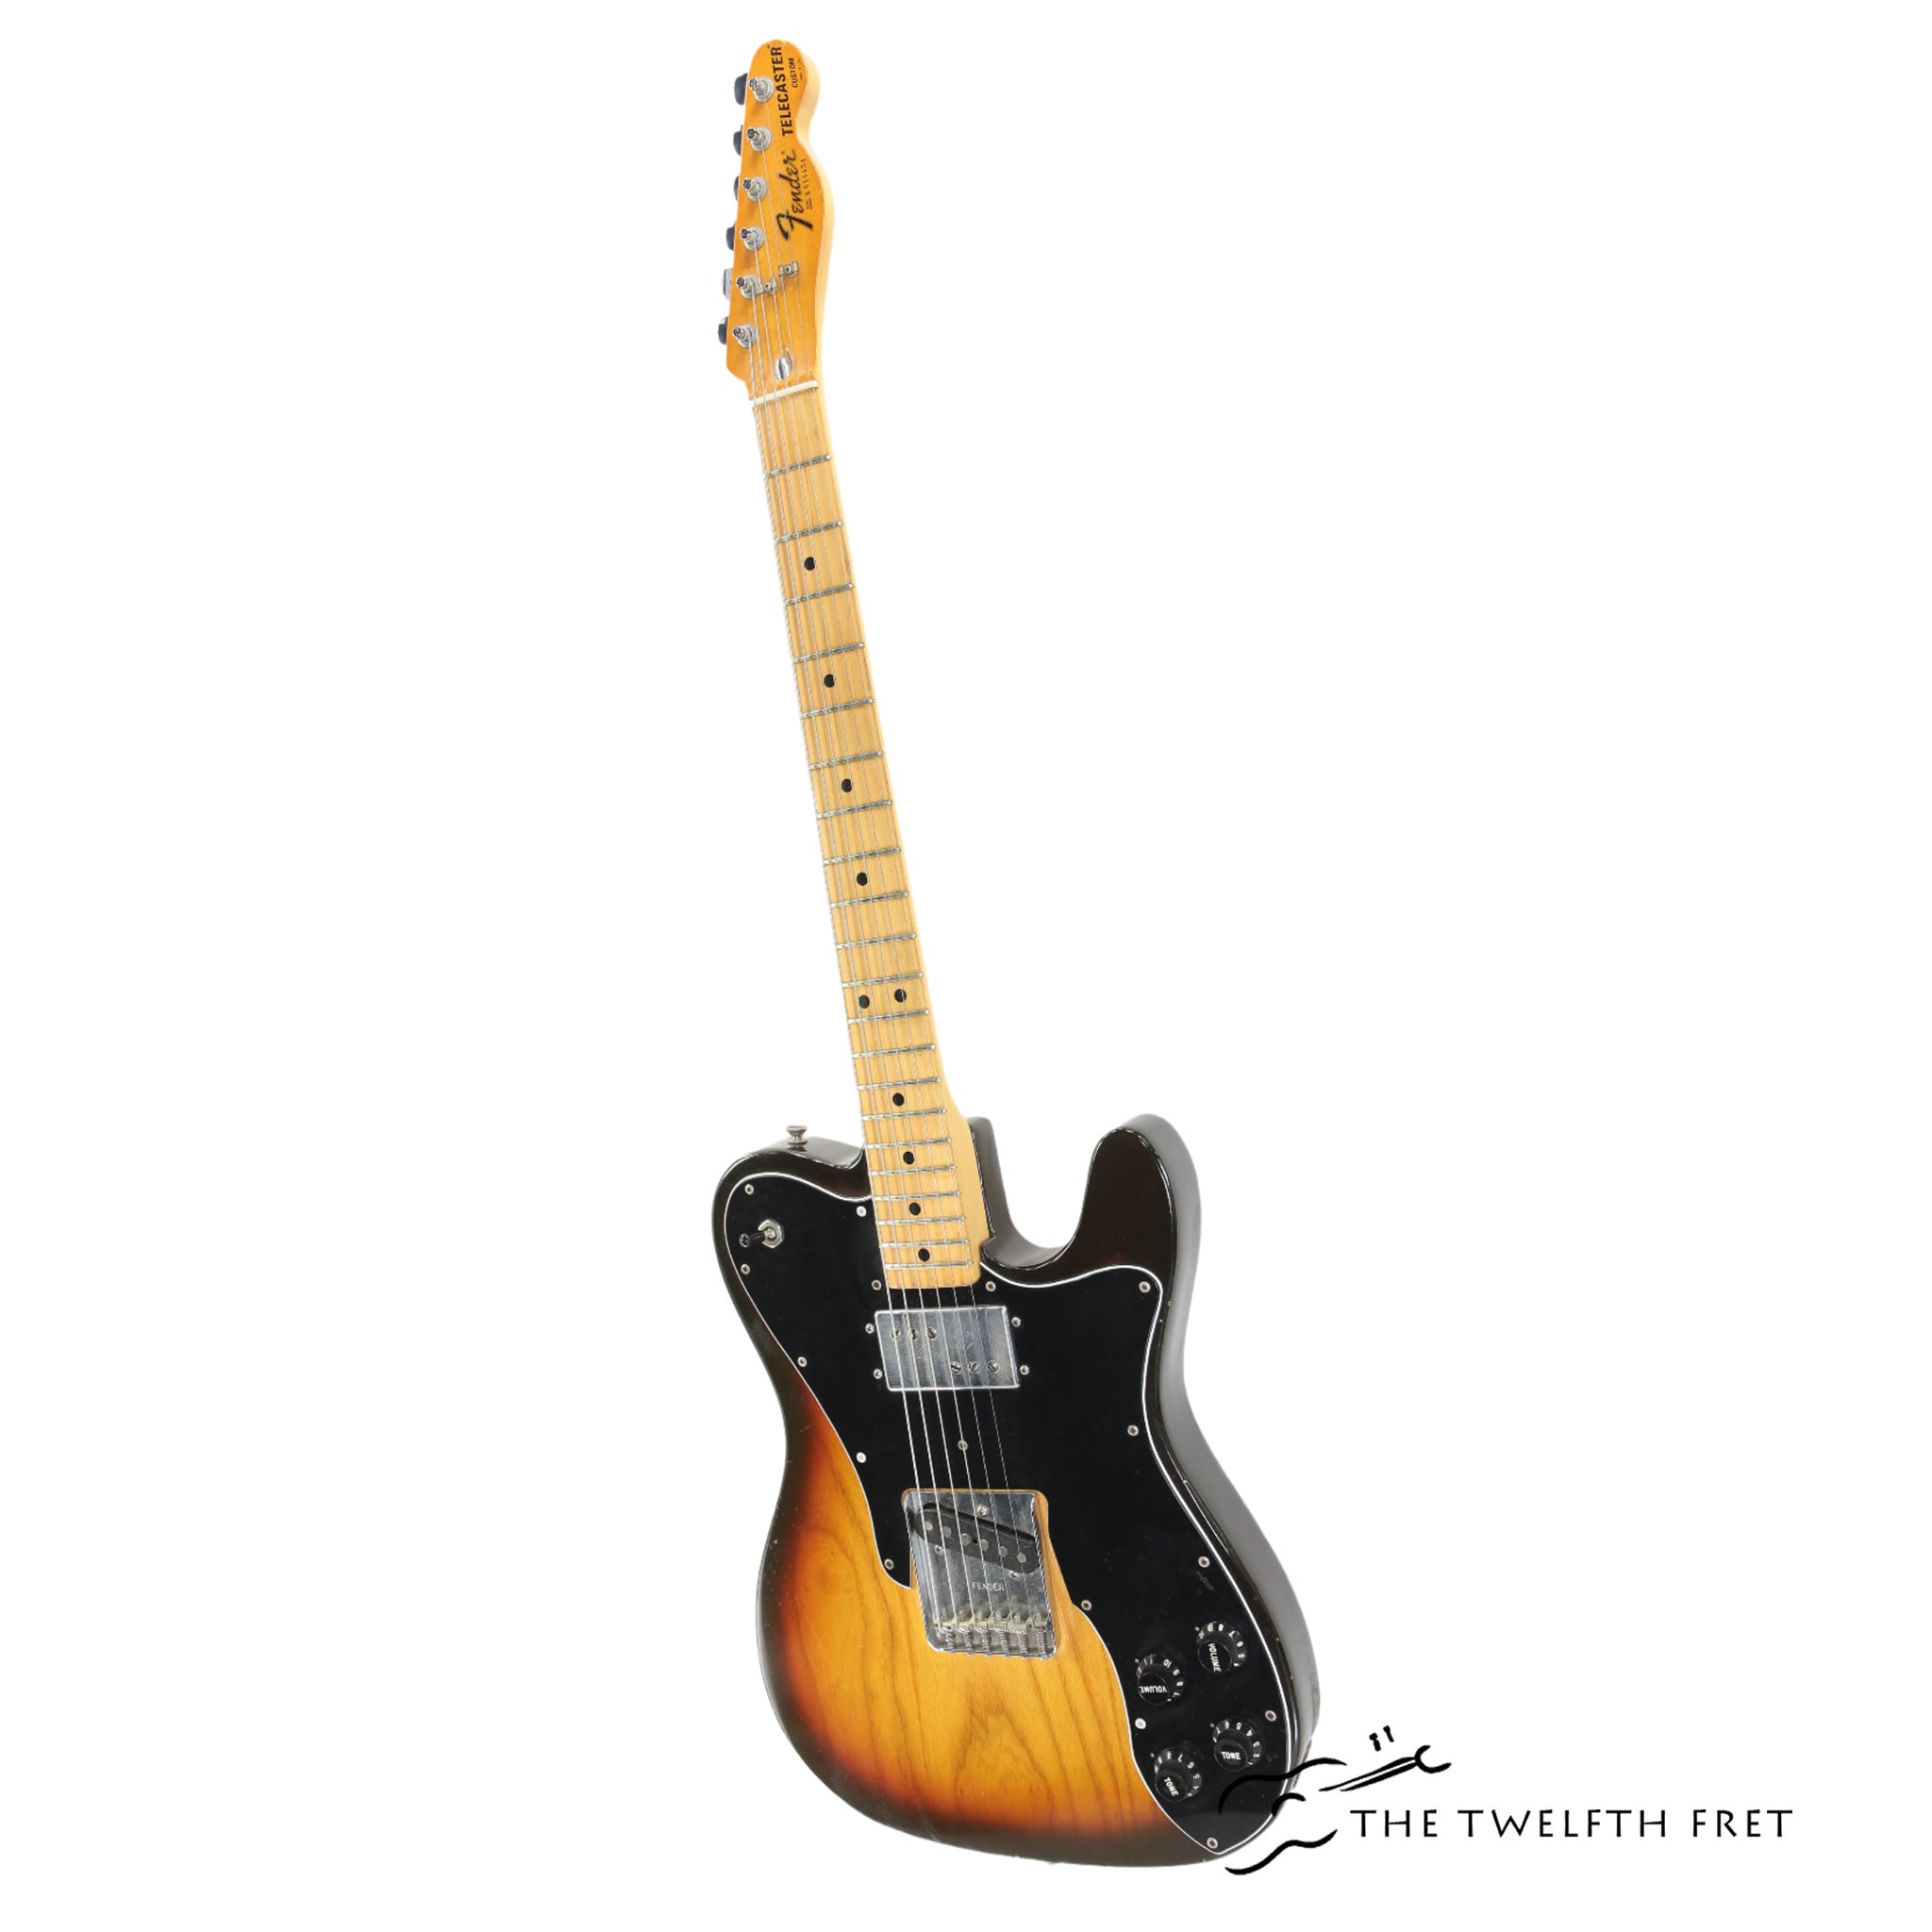 Fender Telecaster Custom Sunburst, 1978 - The Twelfth Fret